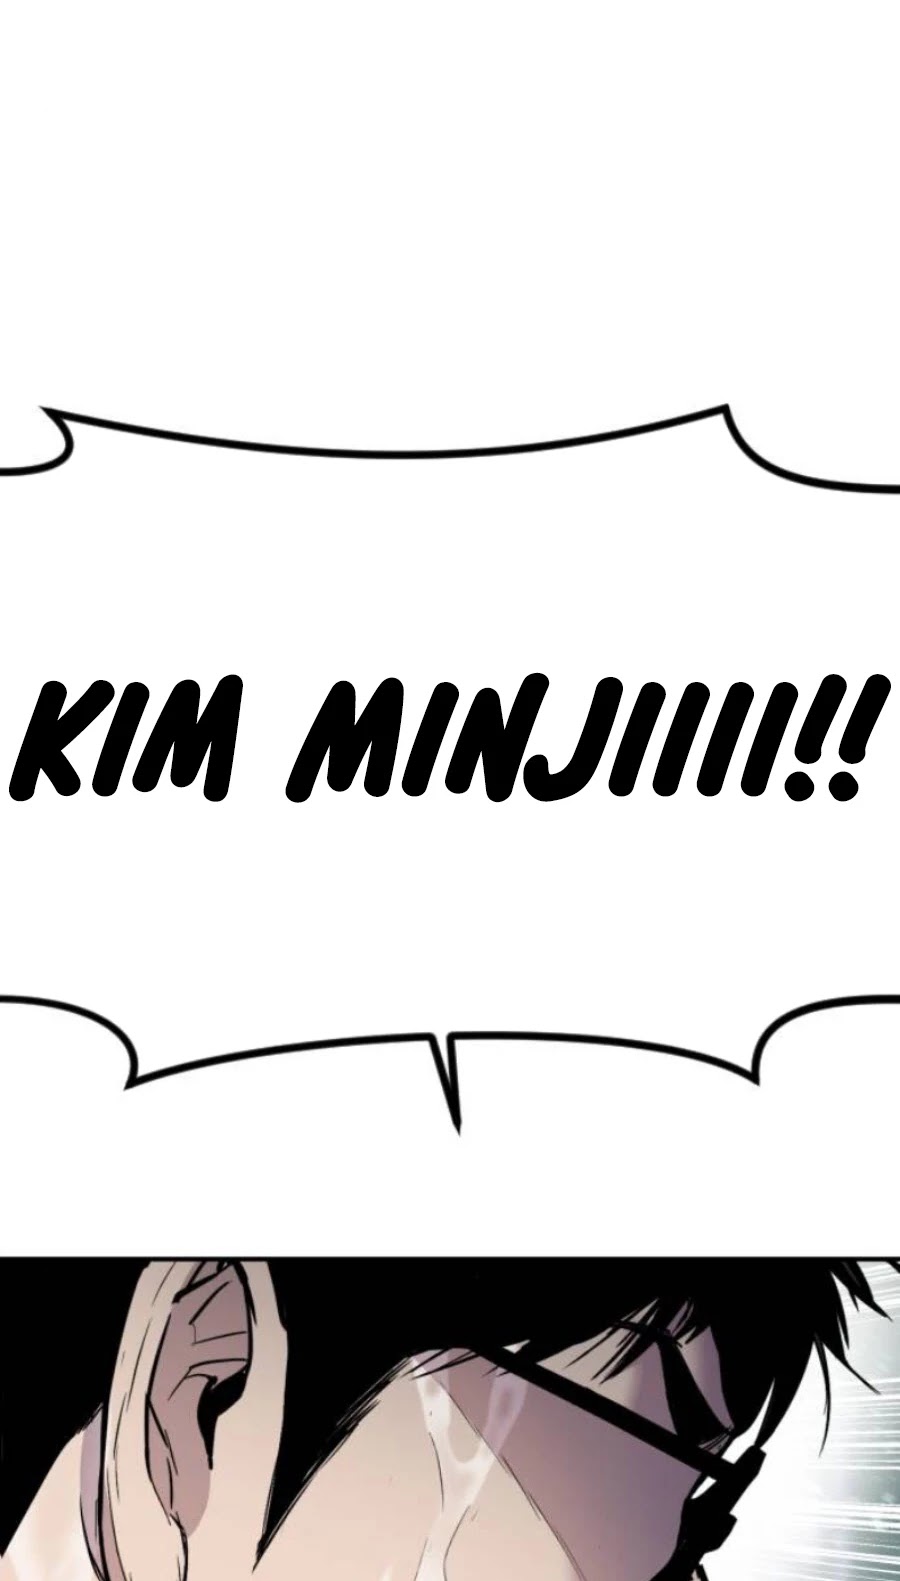 Manager Kim, Manager Kim manhwa, Manager Kim manga, Manager Kim anime, read Manager Kim